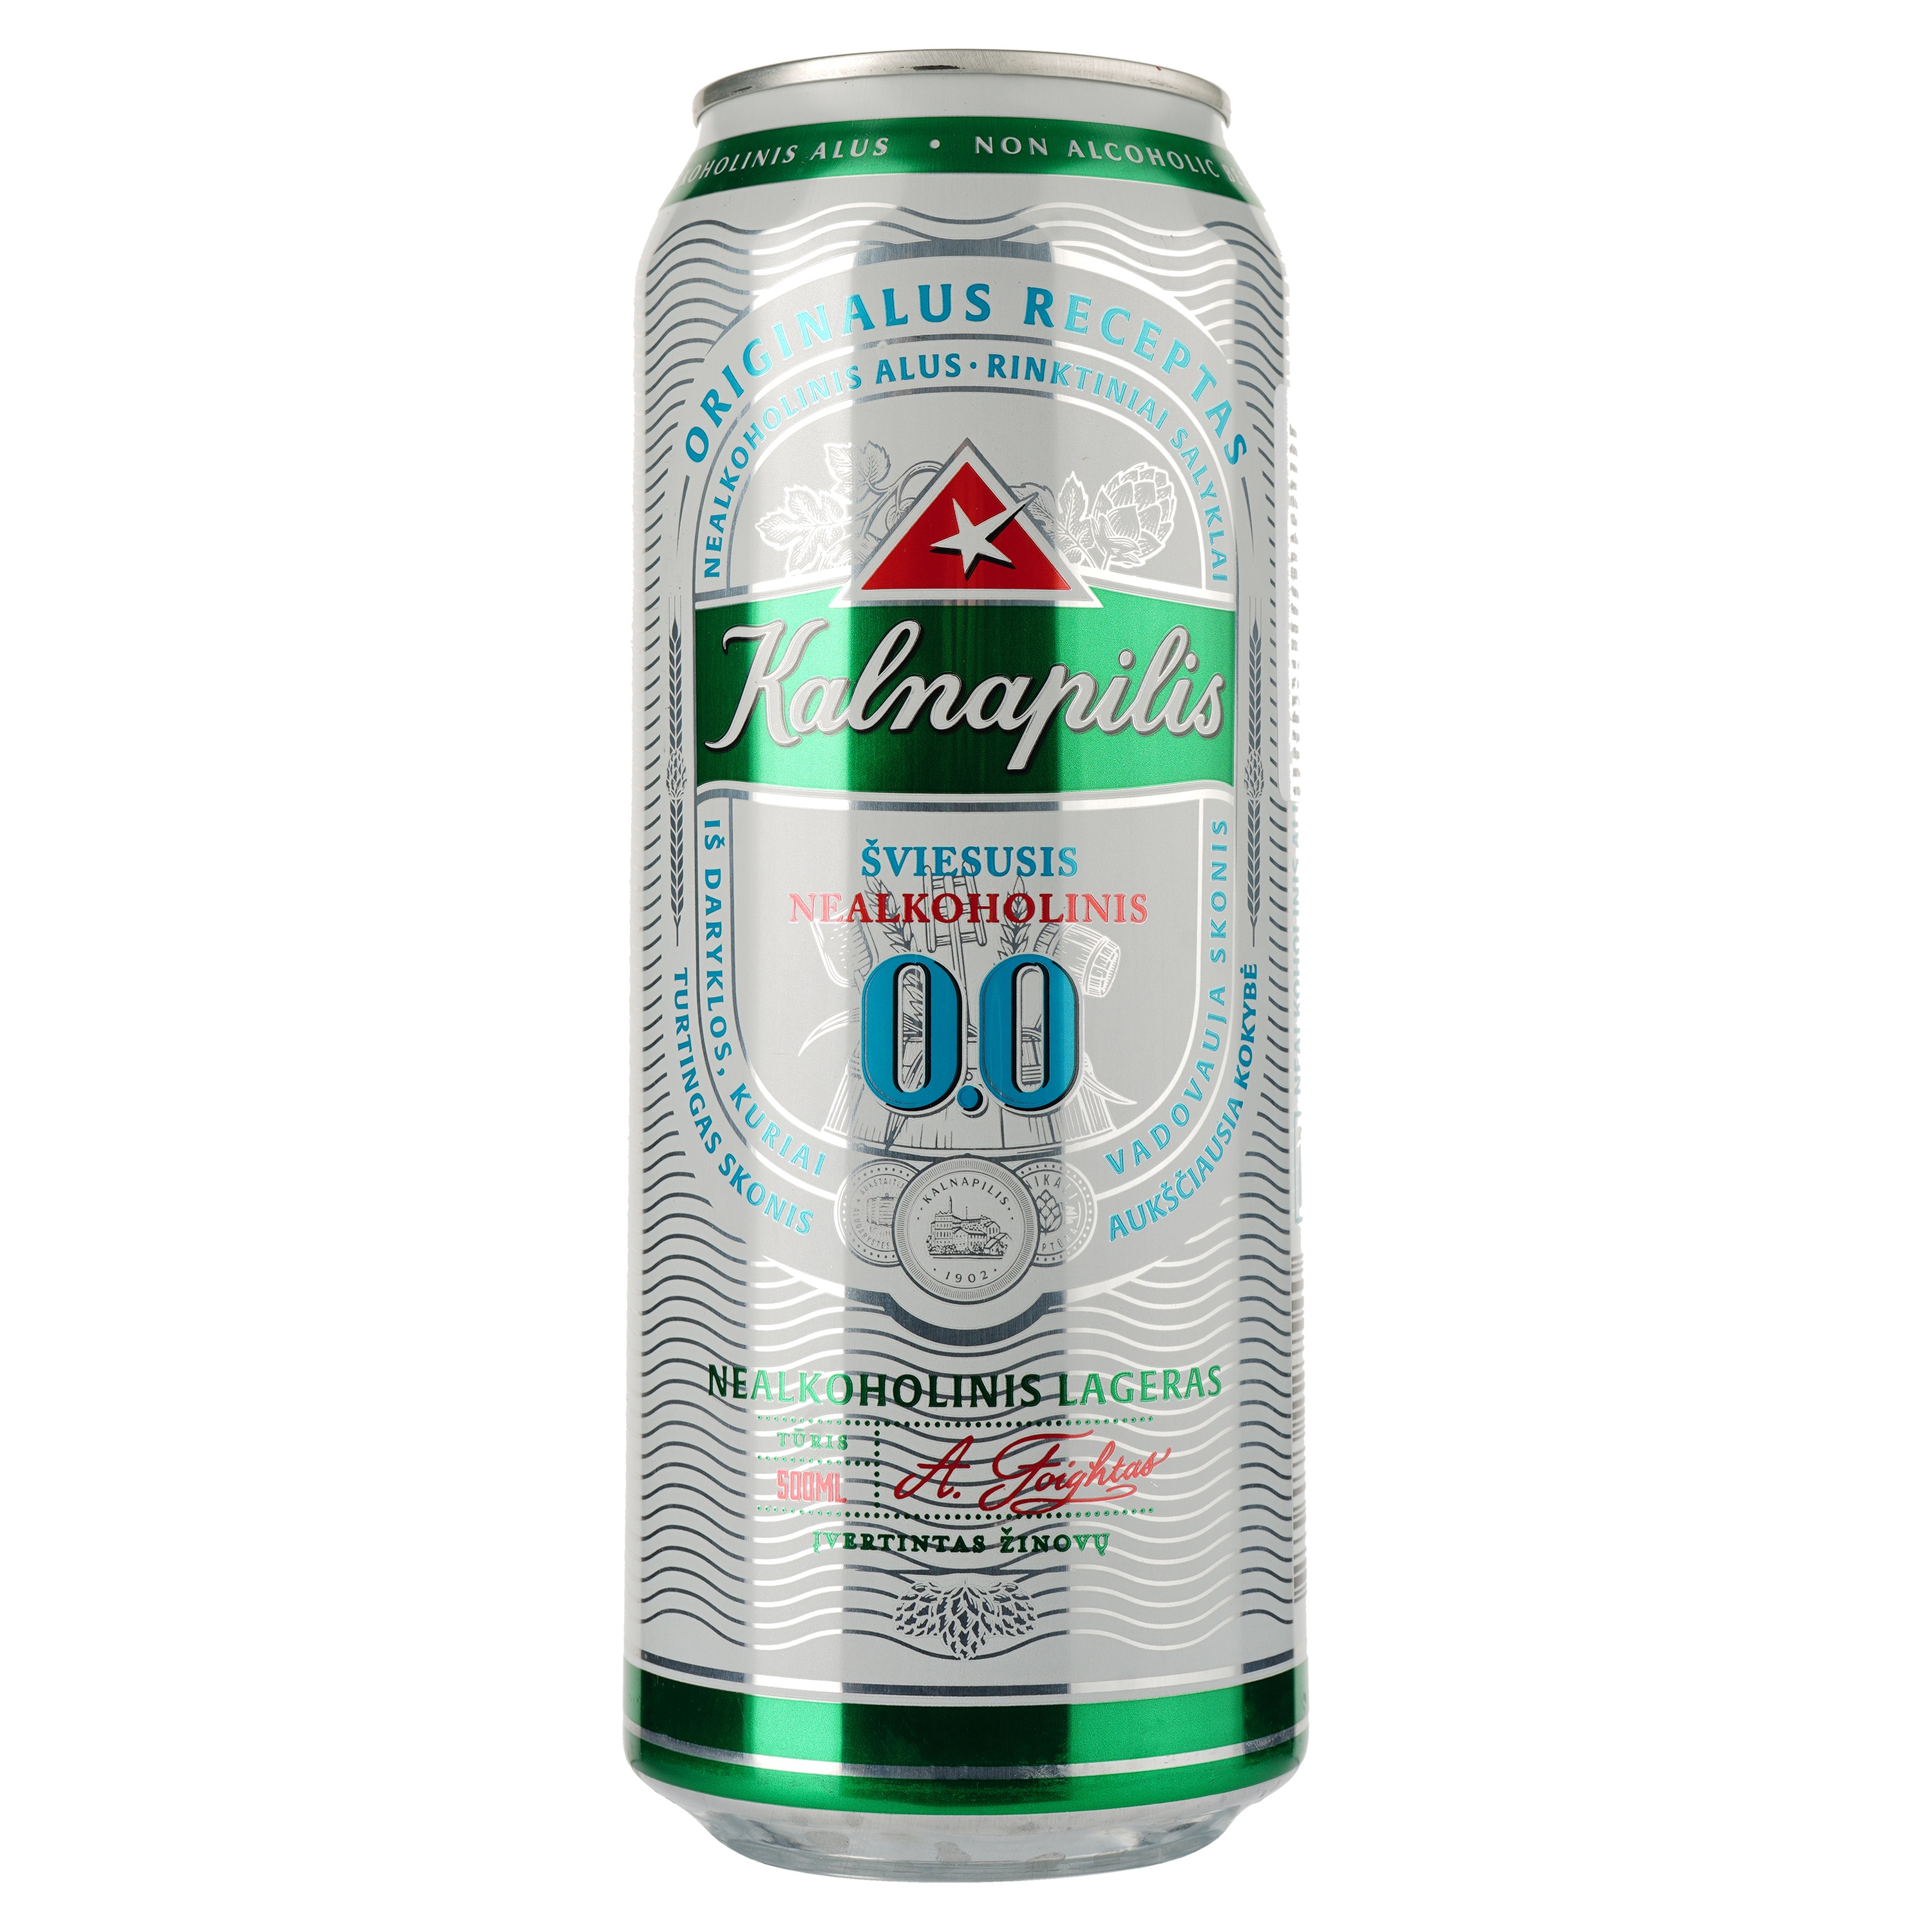 Пиво Kalnapilis Non-Alko Classic светлое, ж/б, 0.5 л - фото 1